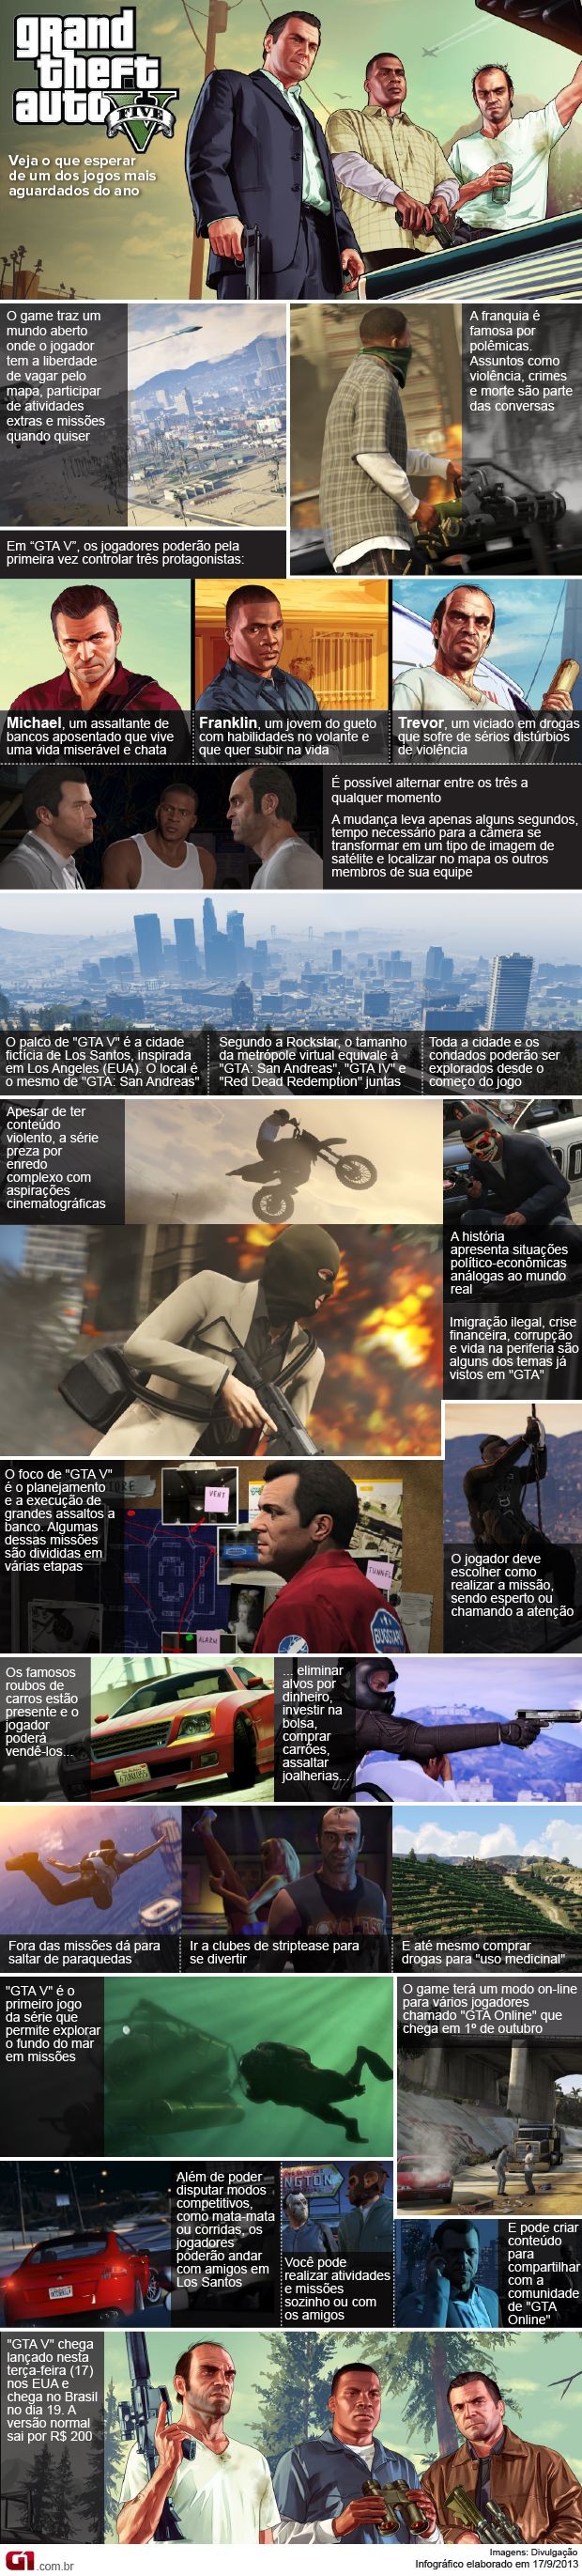 GTA Online - Atualização traz novas missões e conteúdo empolgante